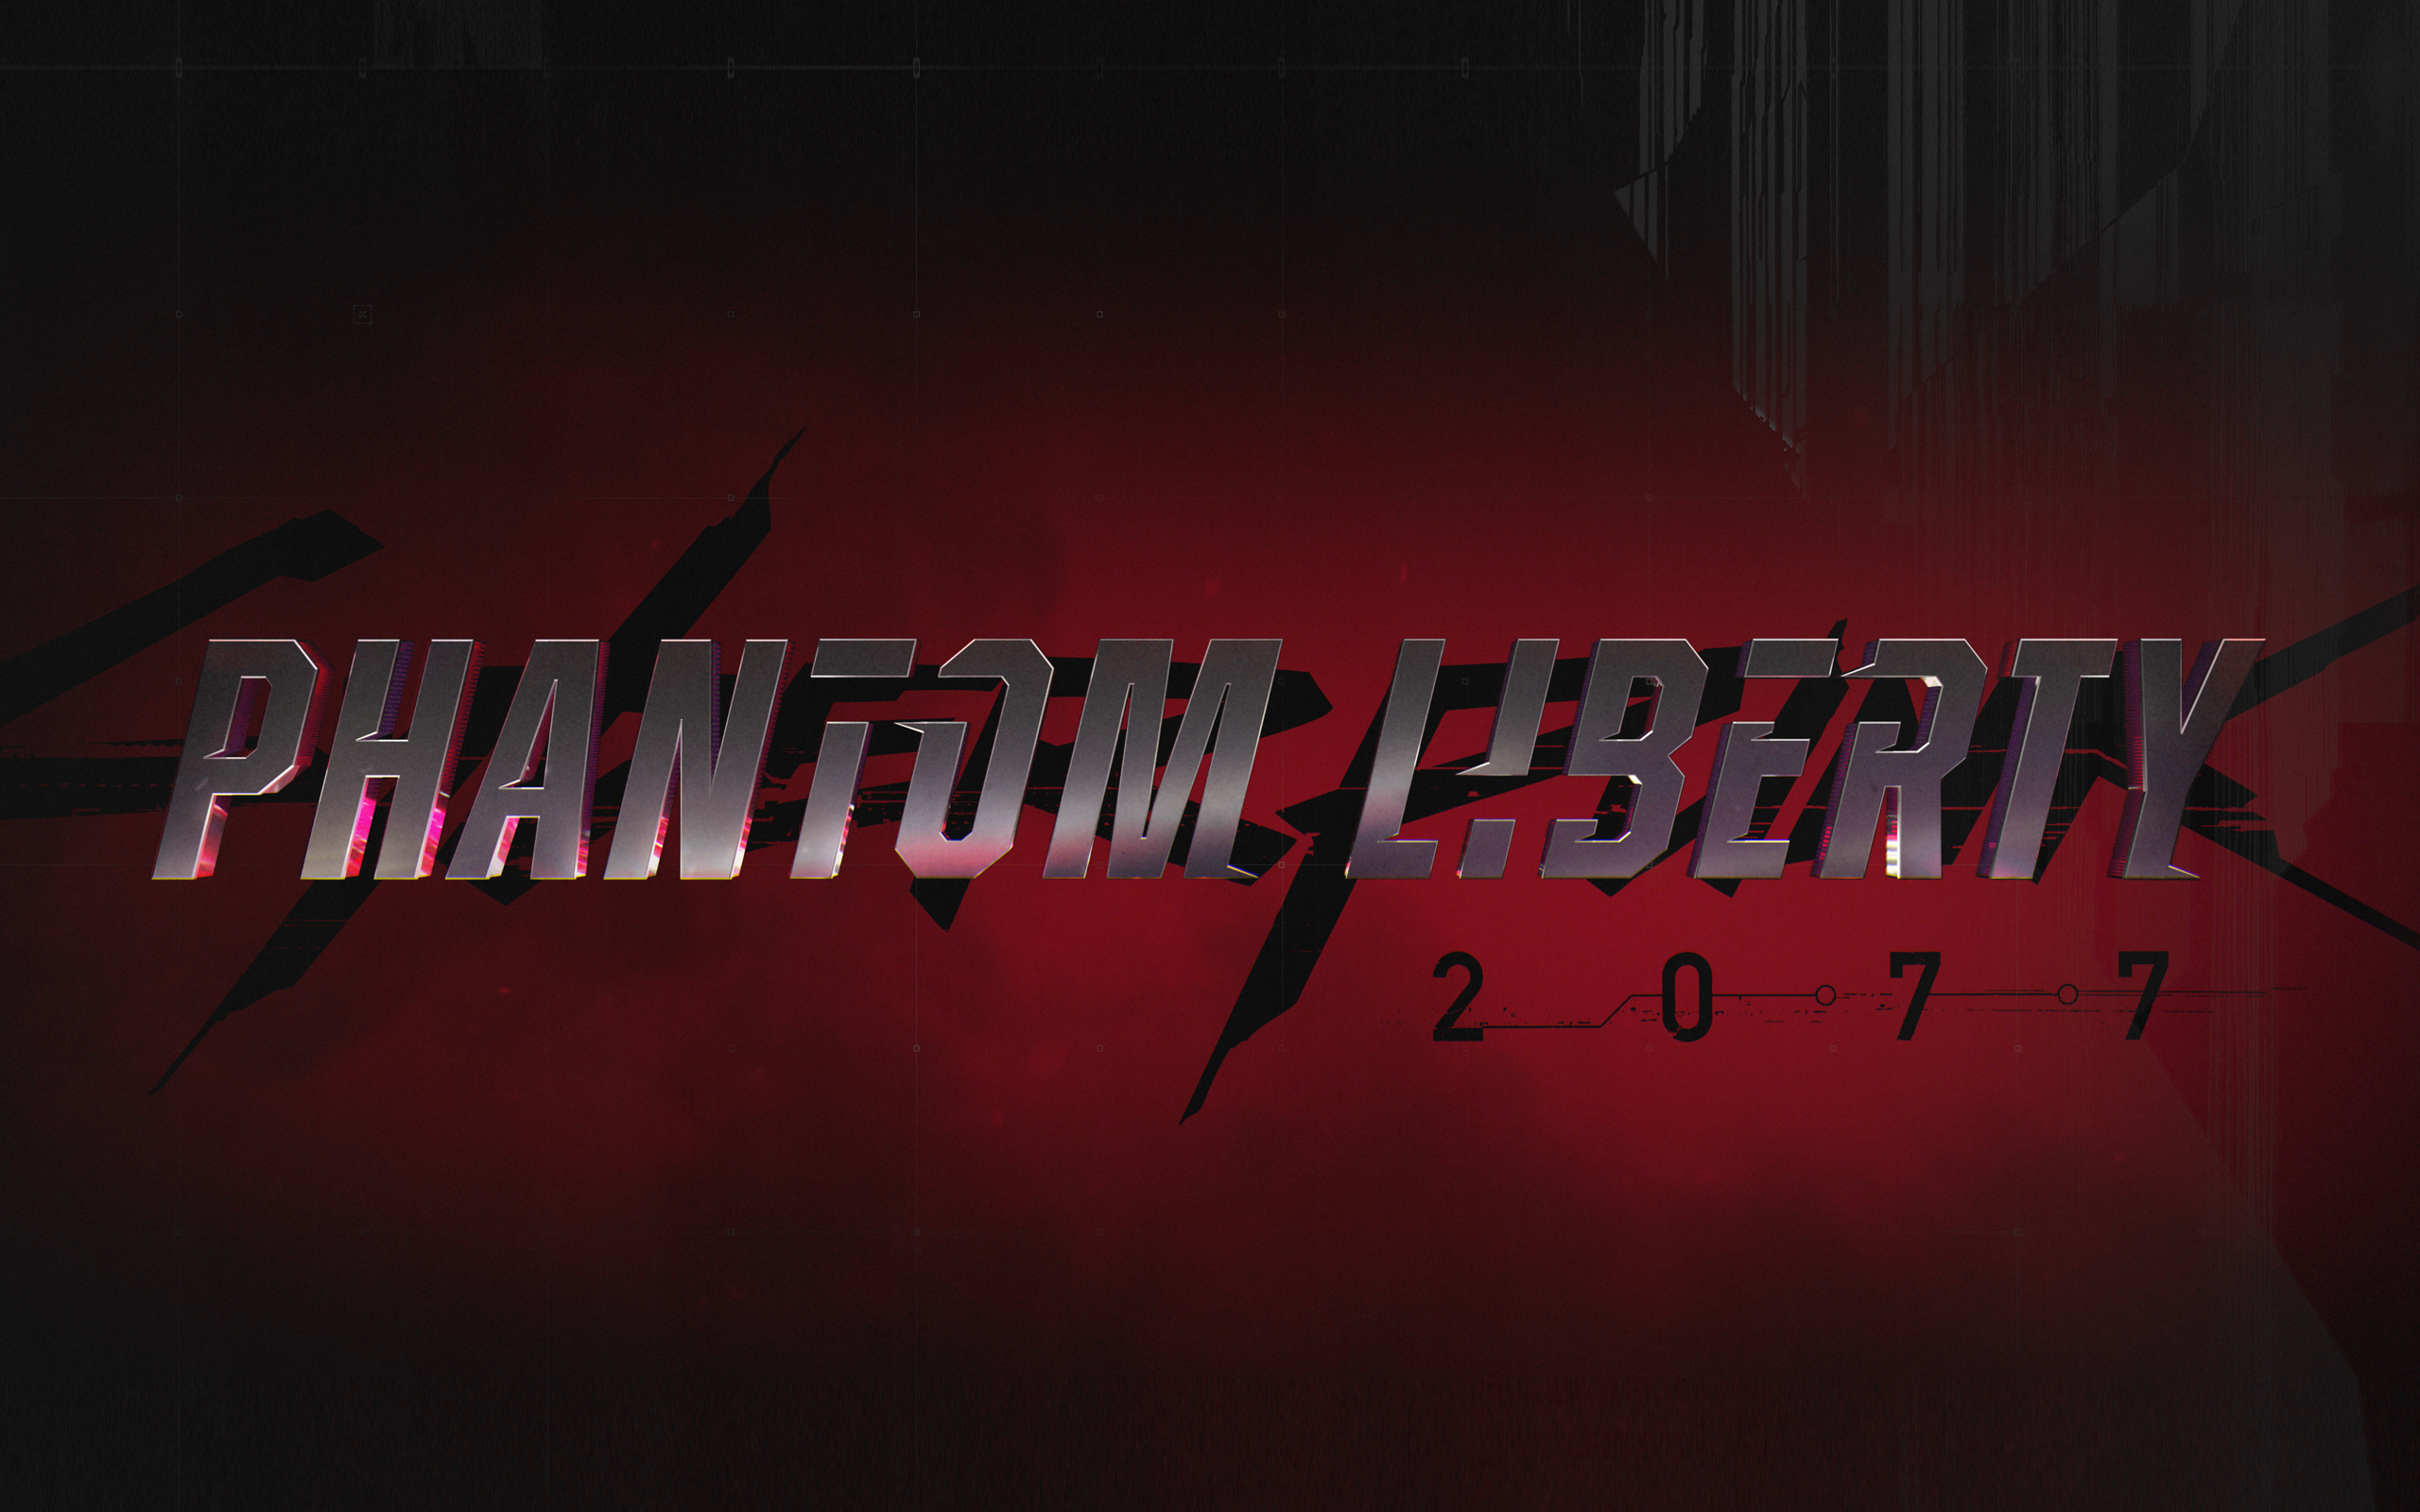 Cyberpunk 2077: Phantom Liberty Wallpaper 4K, V (Cyberpunk)